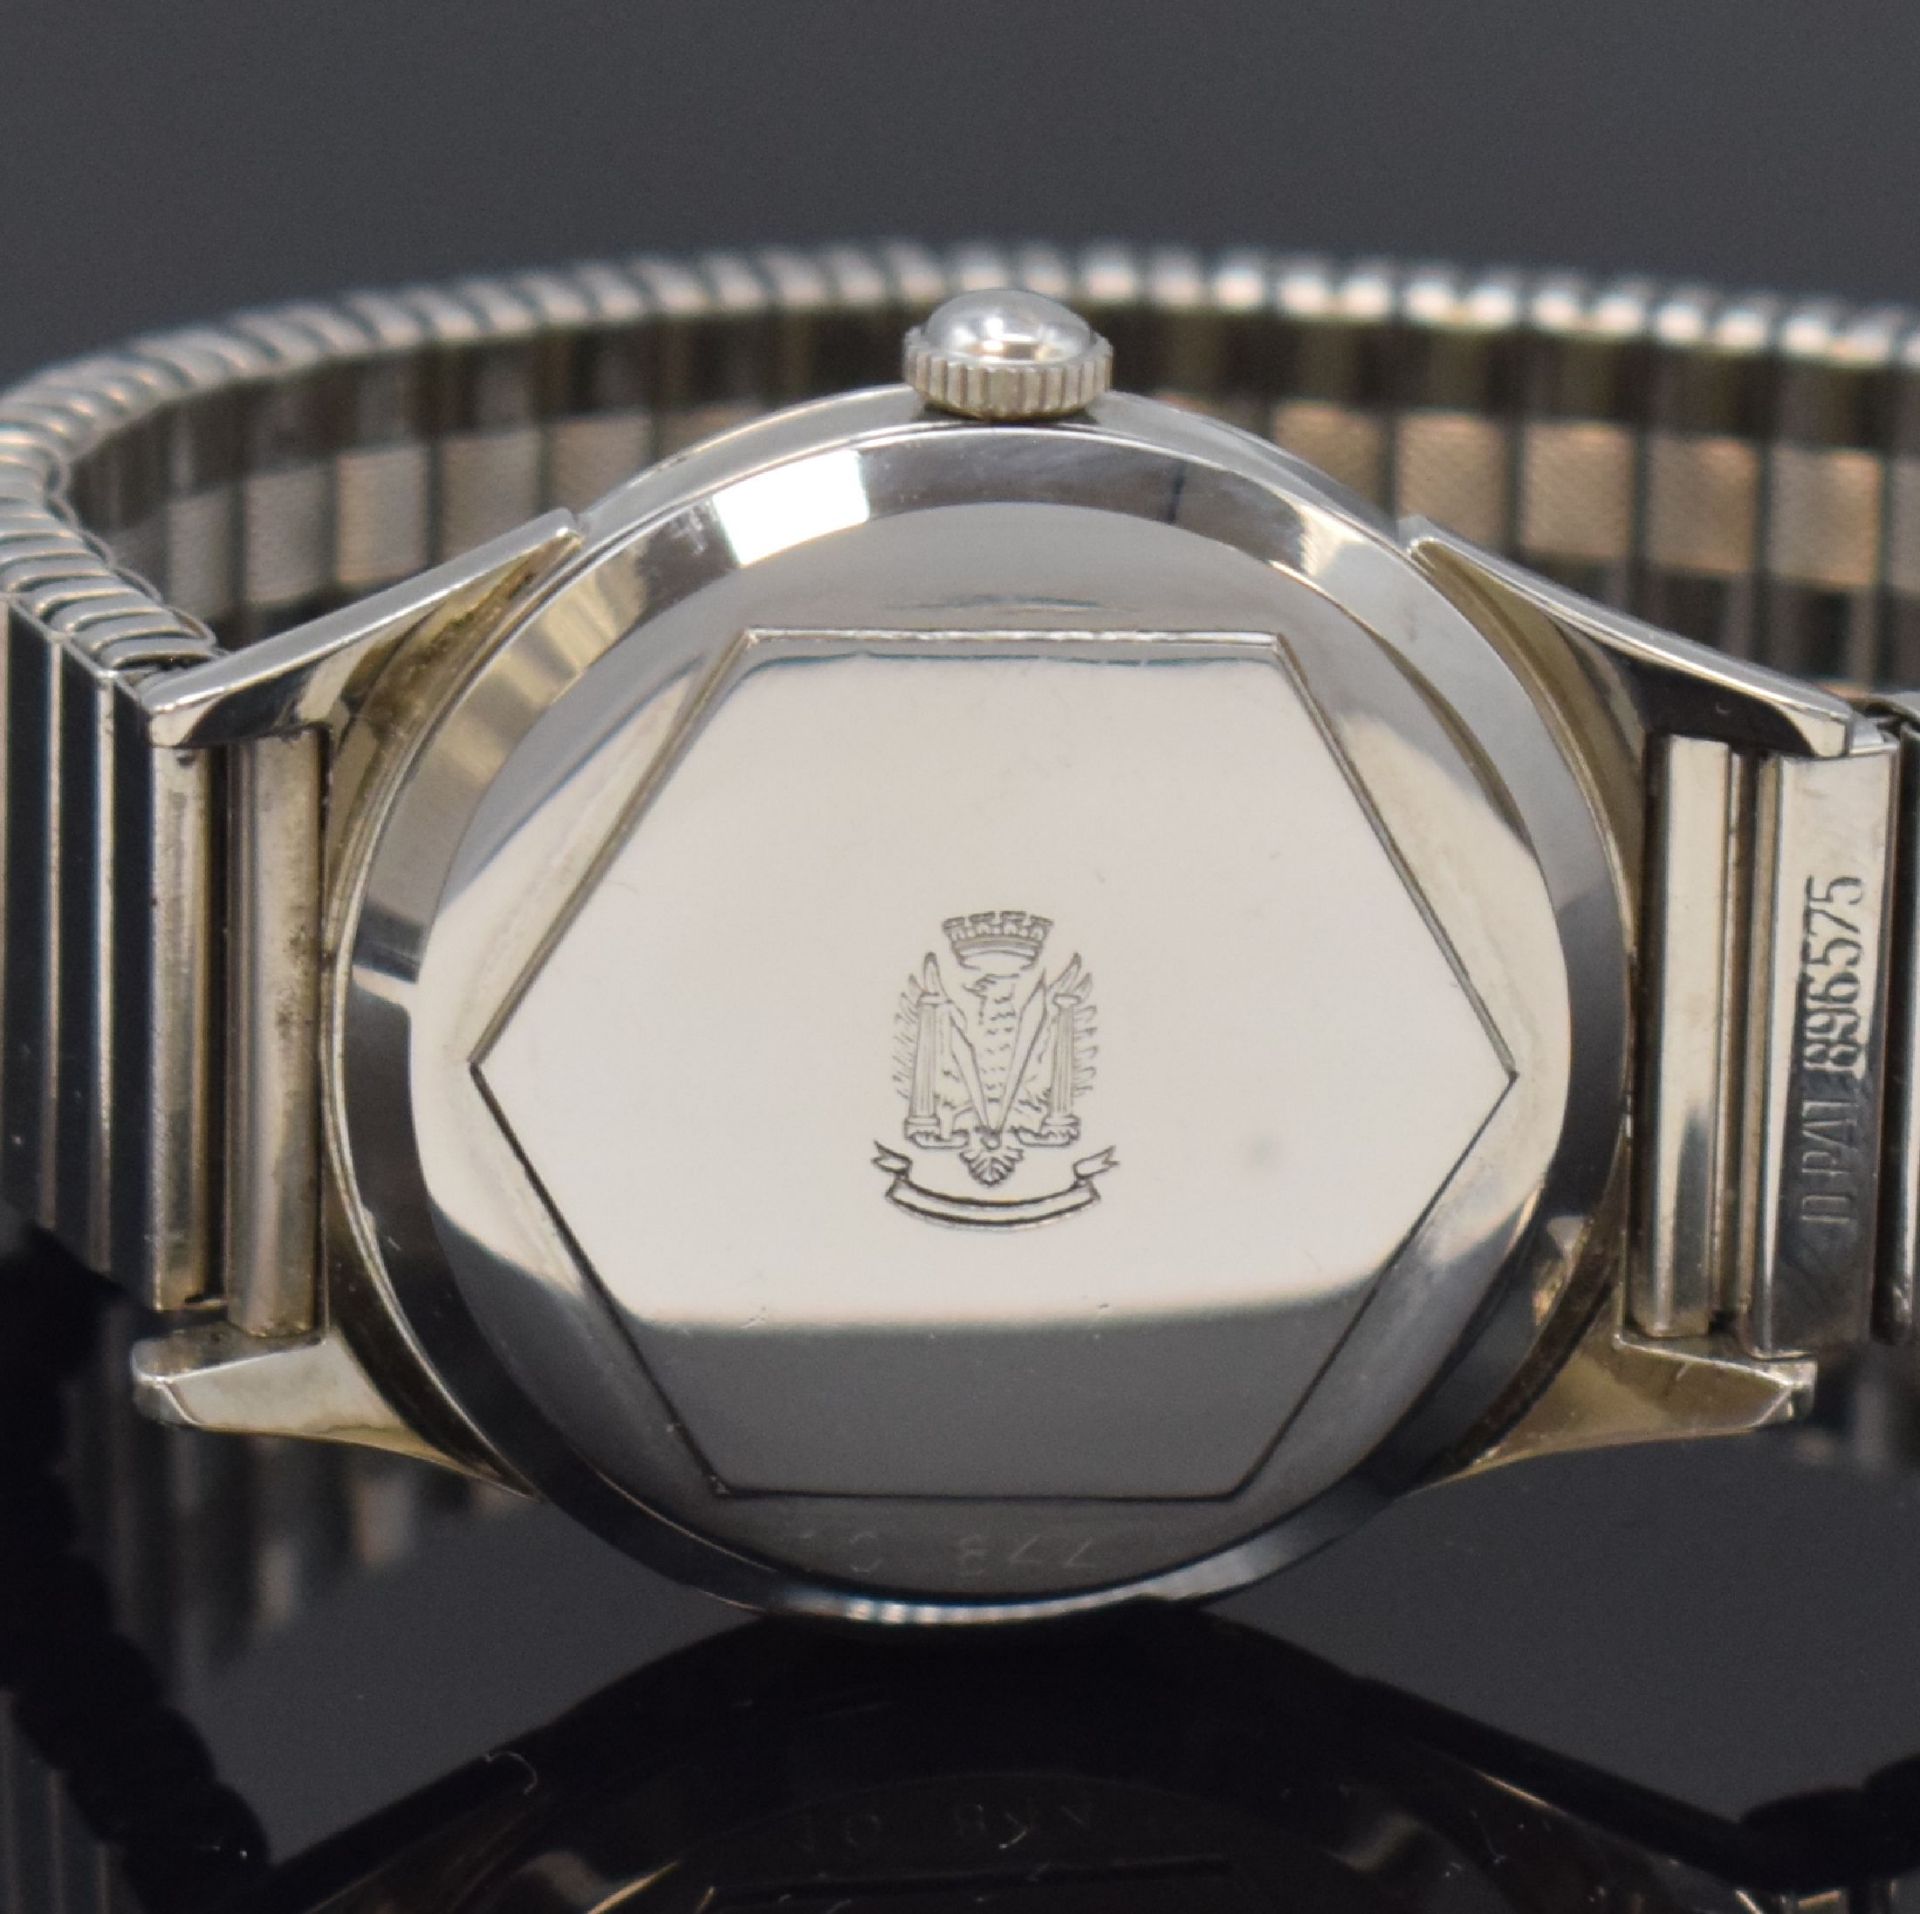 LIP nahezu neuwertige Armbanduhr in Stahl, Frankreich um - Image 4 of 6